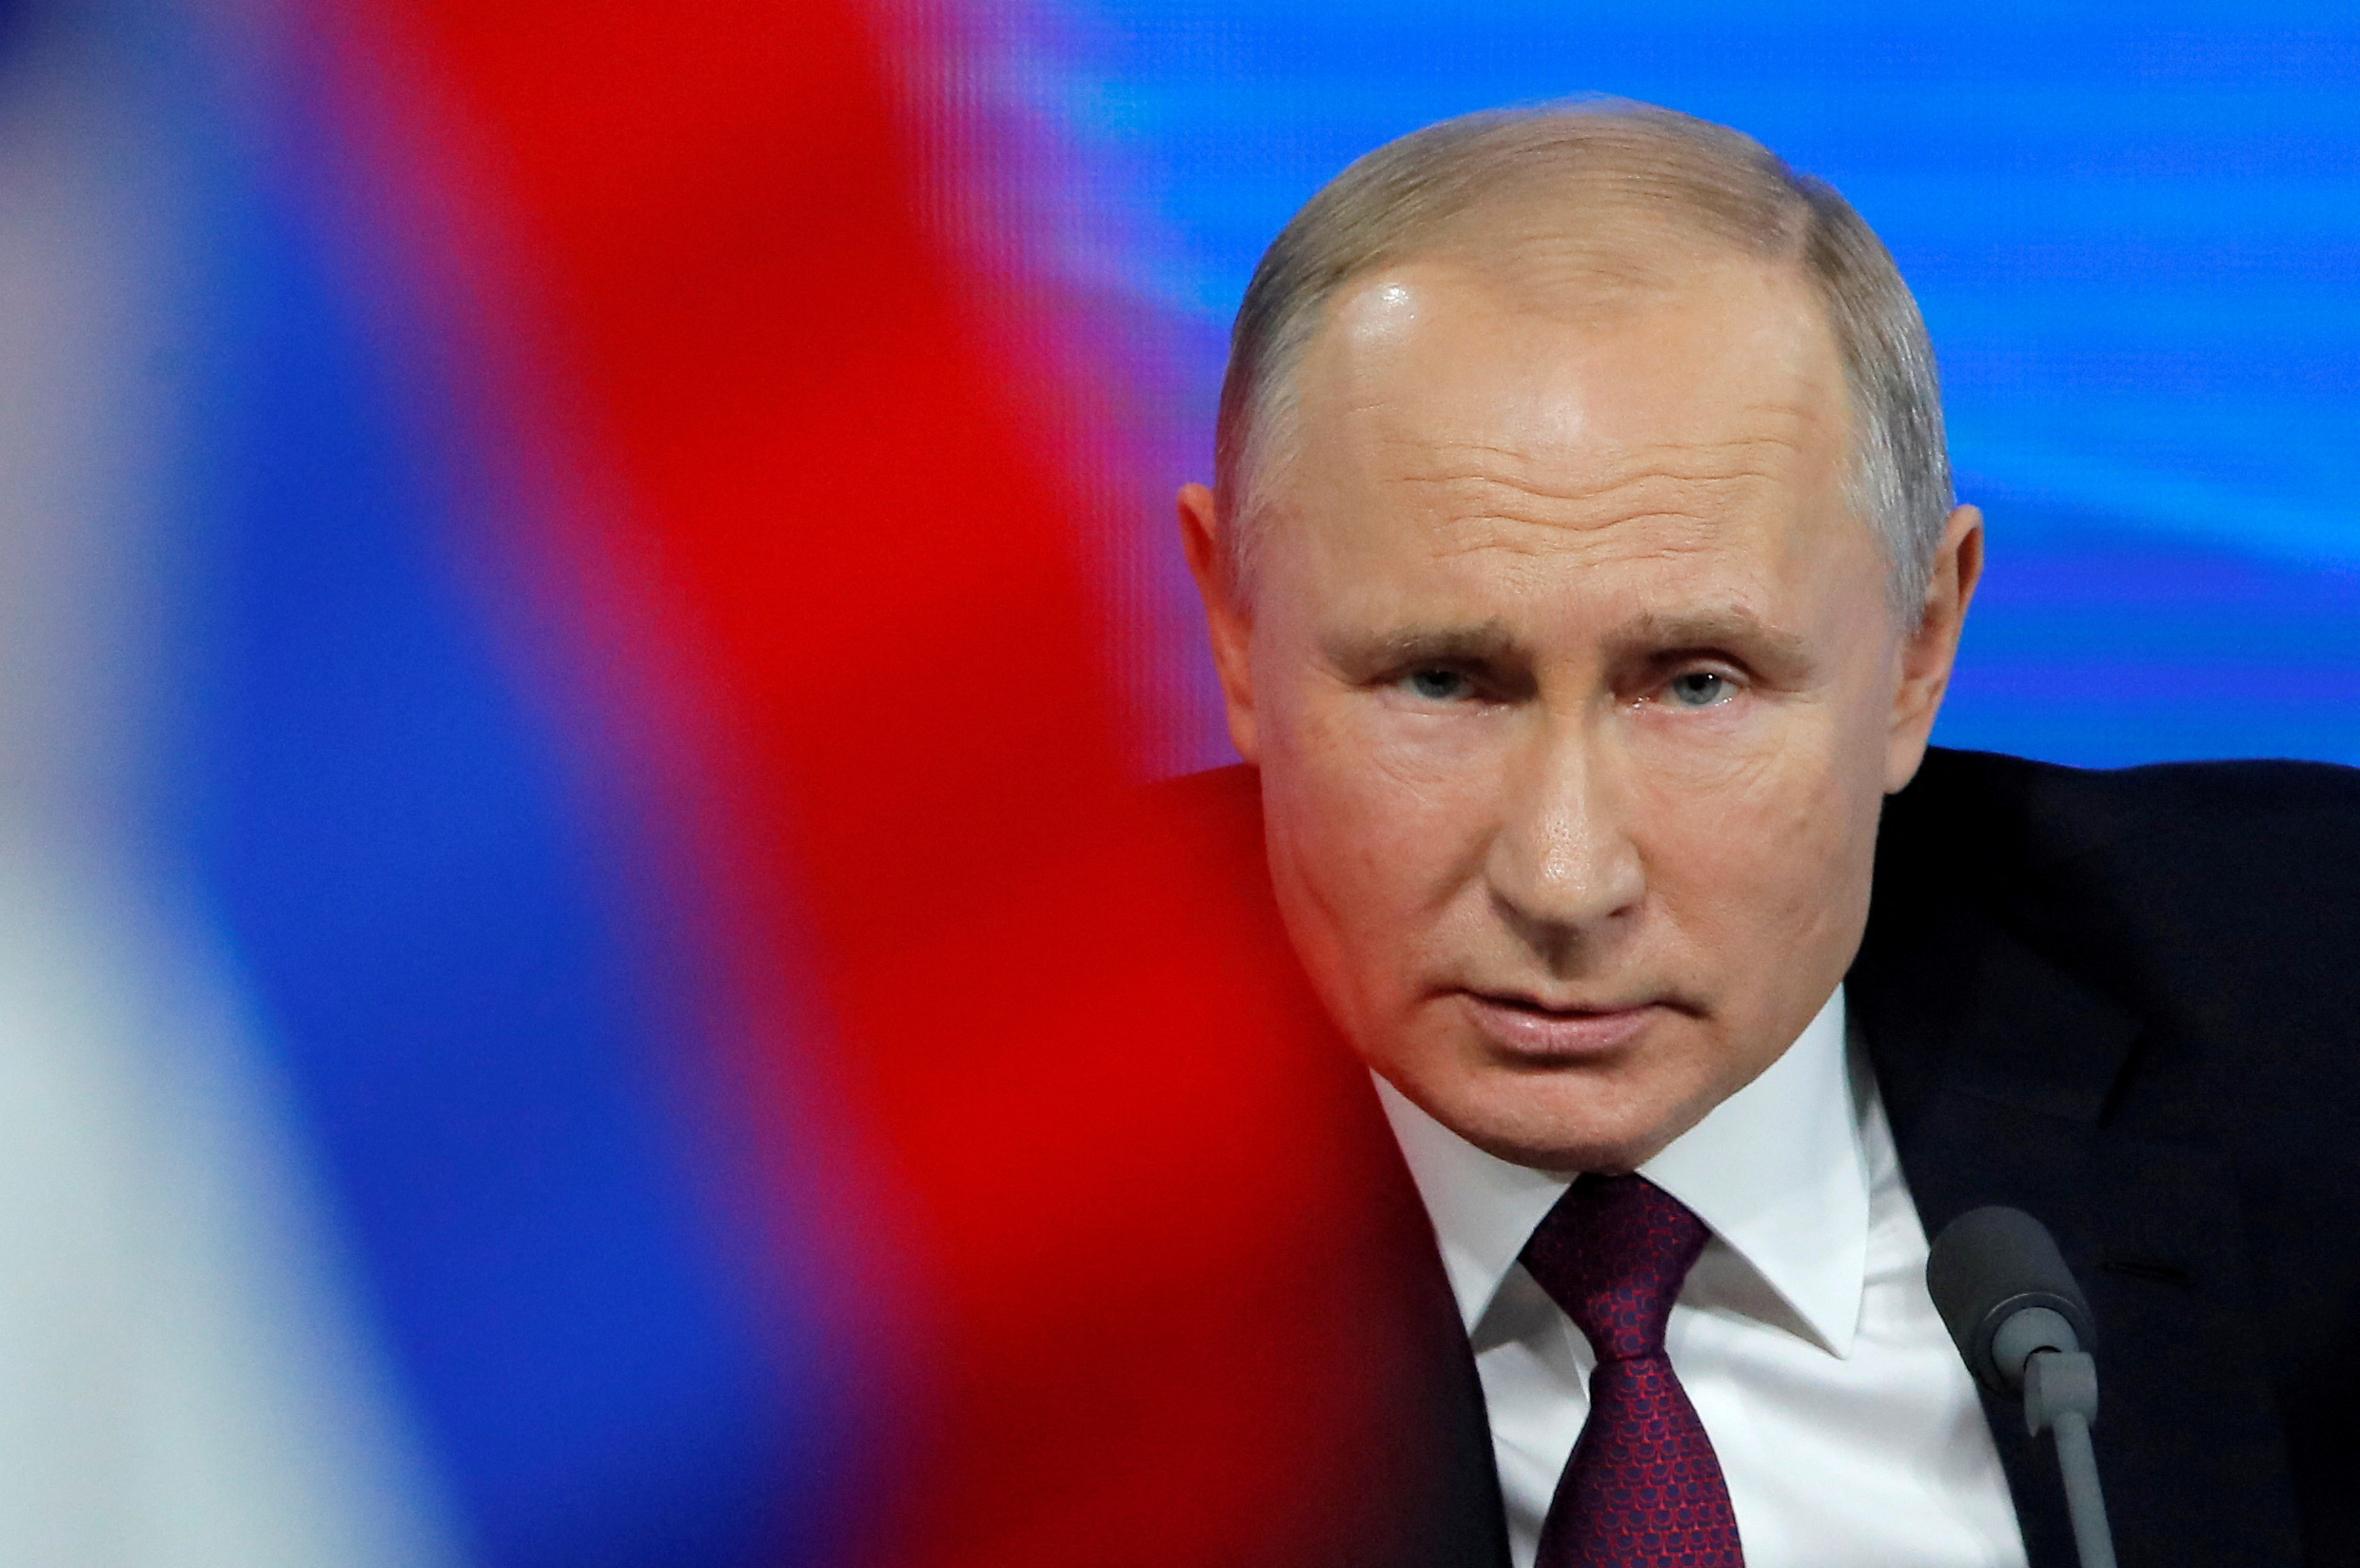 Vladimir Poutine accuse « certains hommes politiques occidentaux » de « détruire l'économie mondiale de marché »